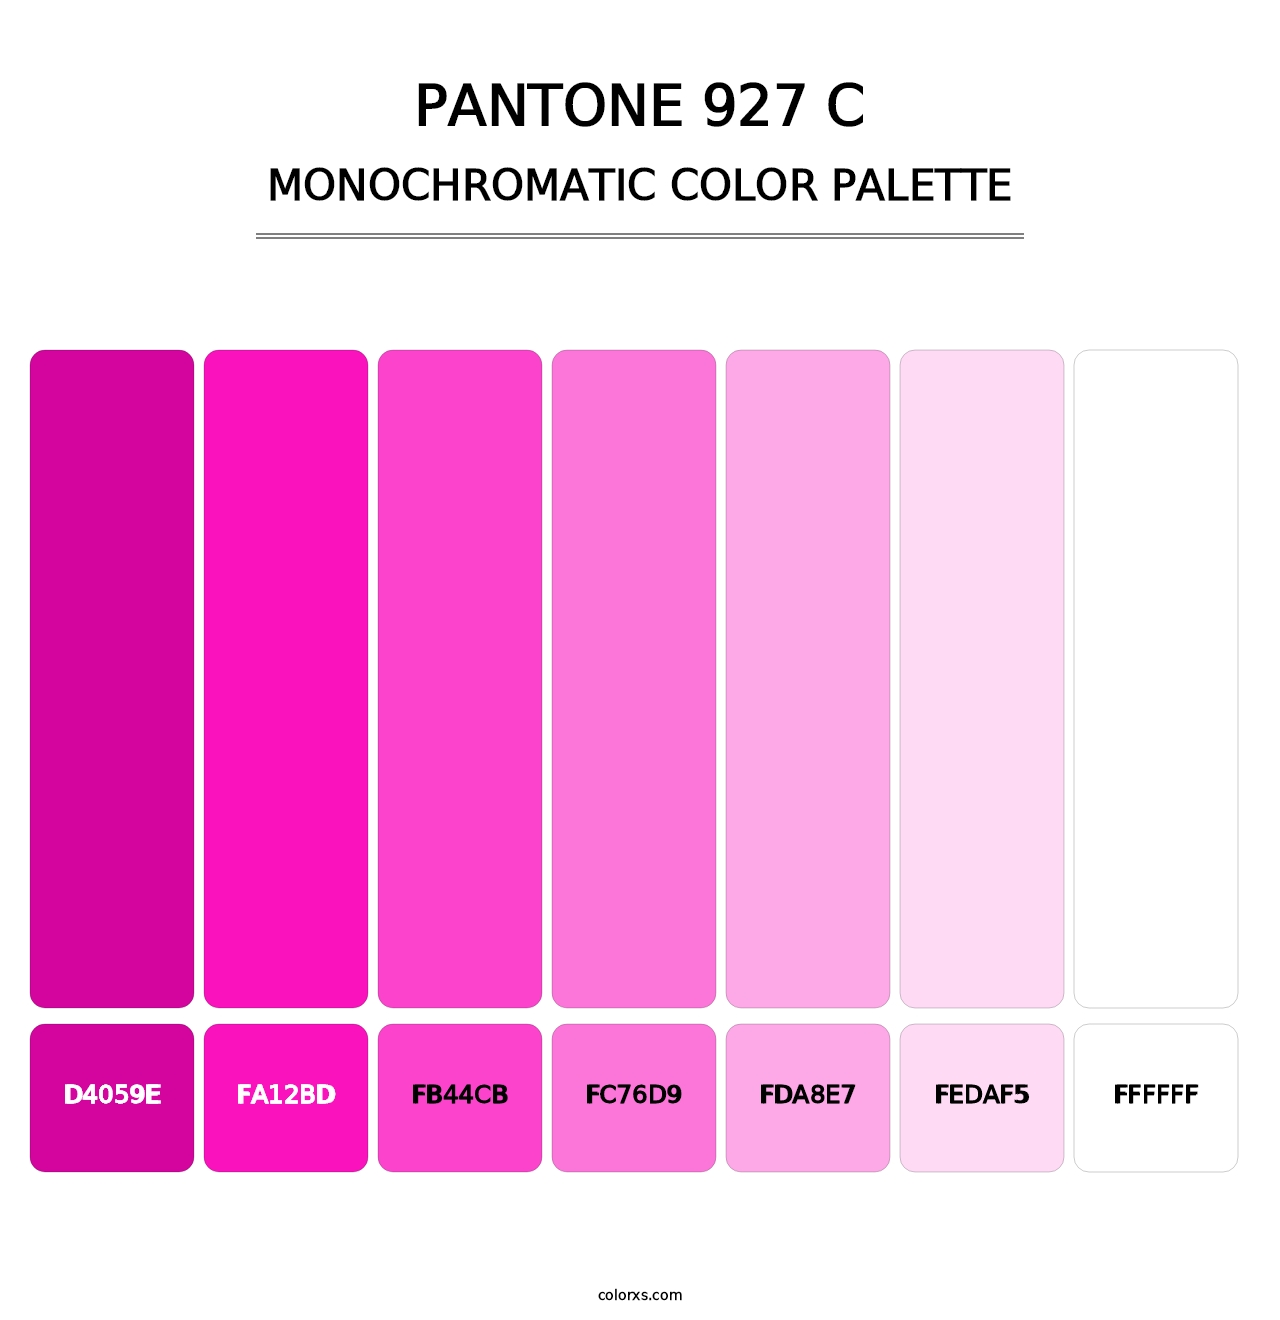 PANTONE 927 C - Monochromatic Color Palette